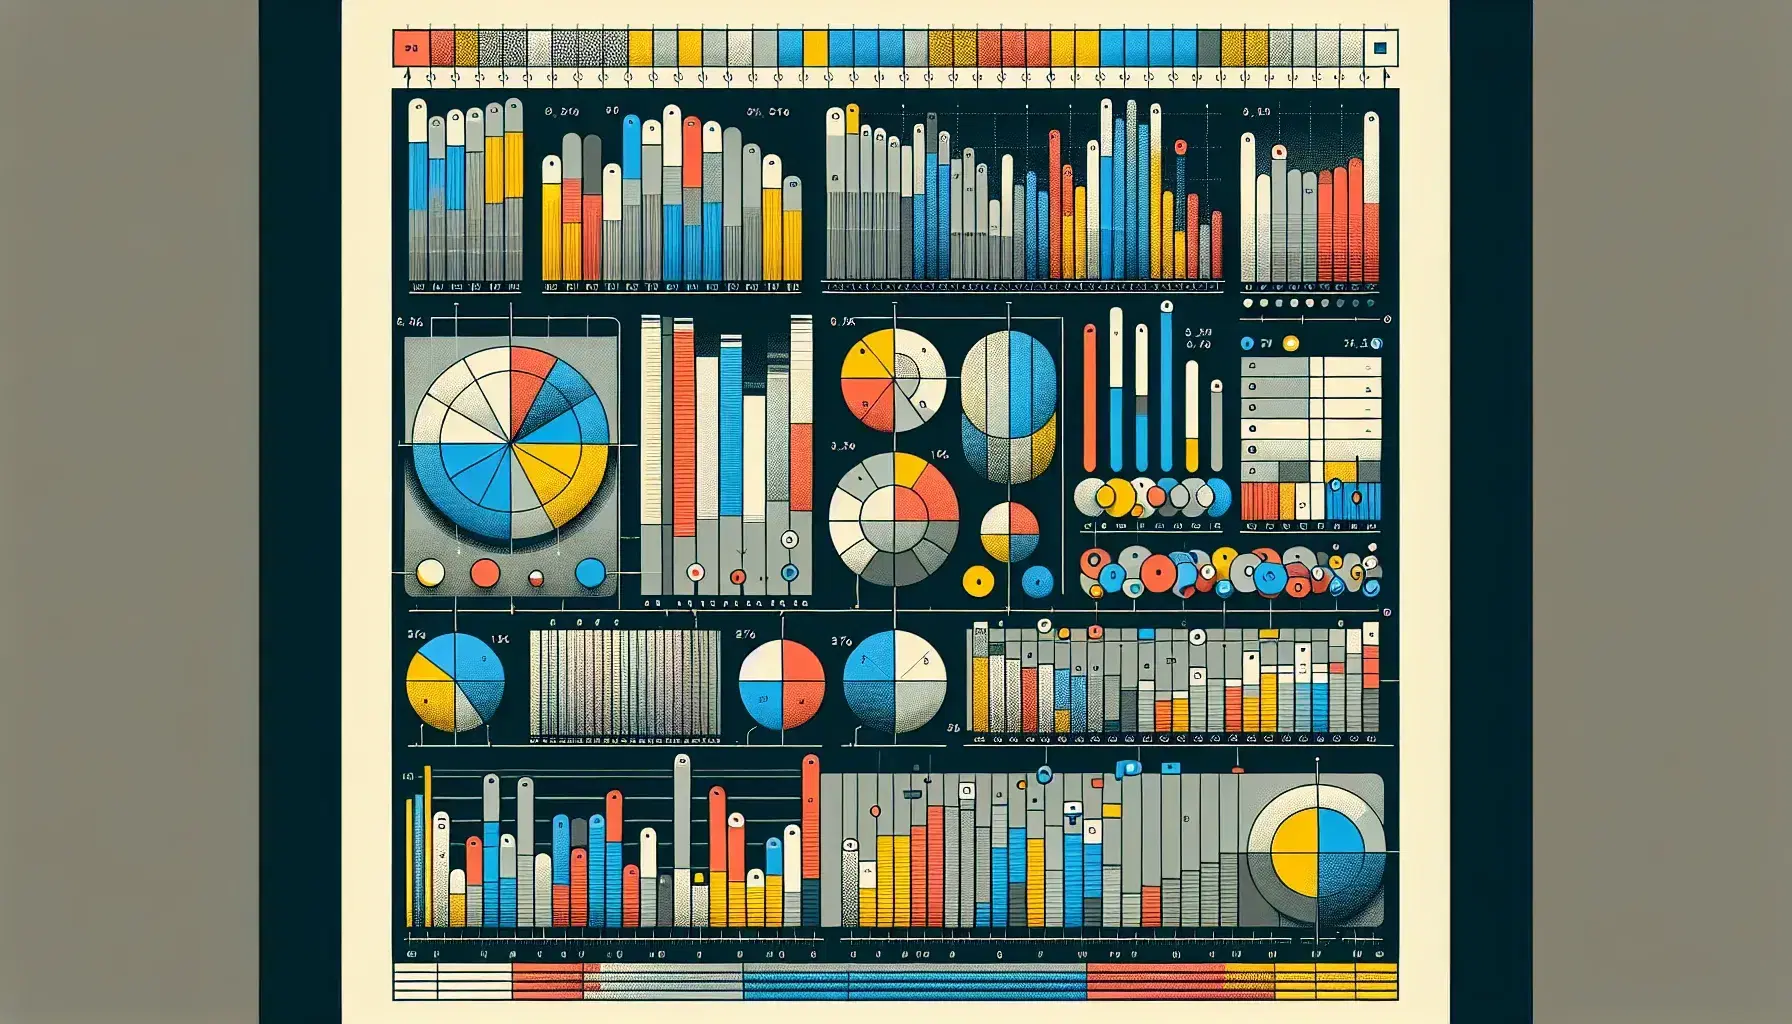 Gráficos de pastel y barras en secuencia horizontal mostrando proporciones y comparaciones de datos con leyenda de colores correspondiente.